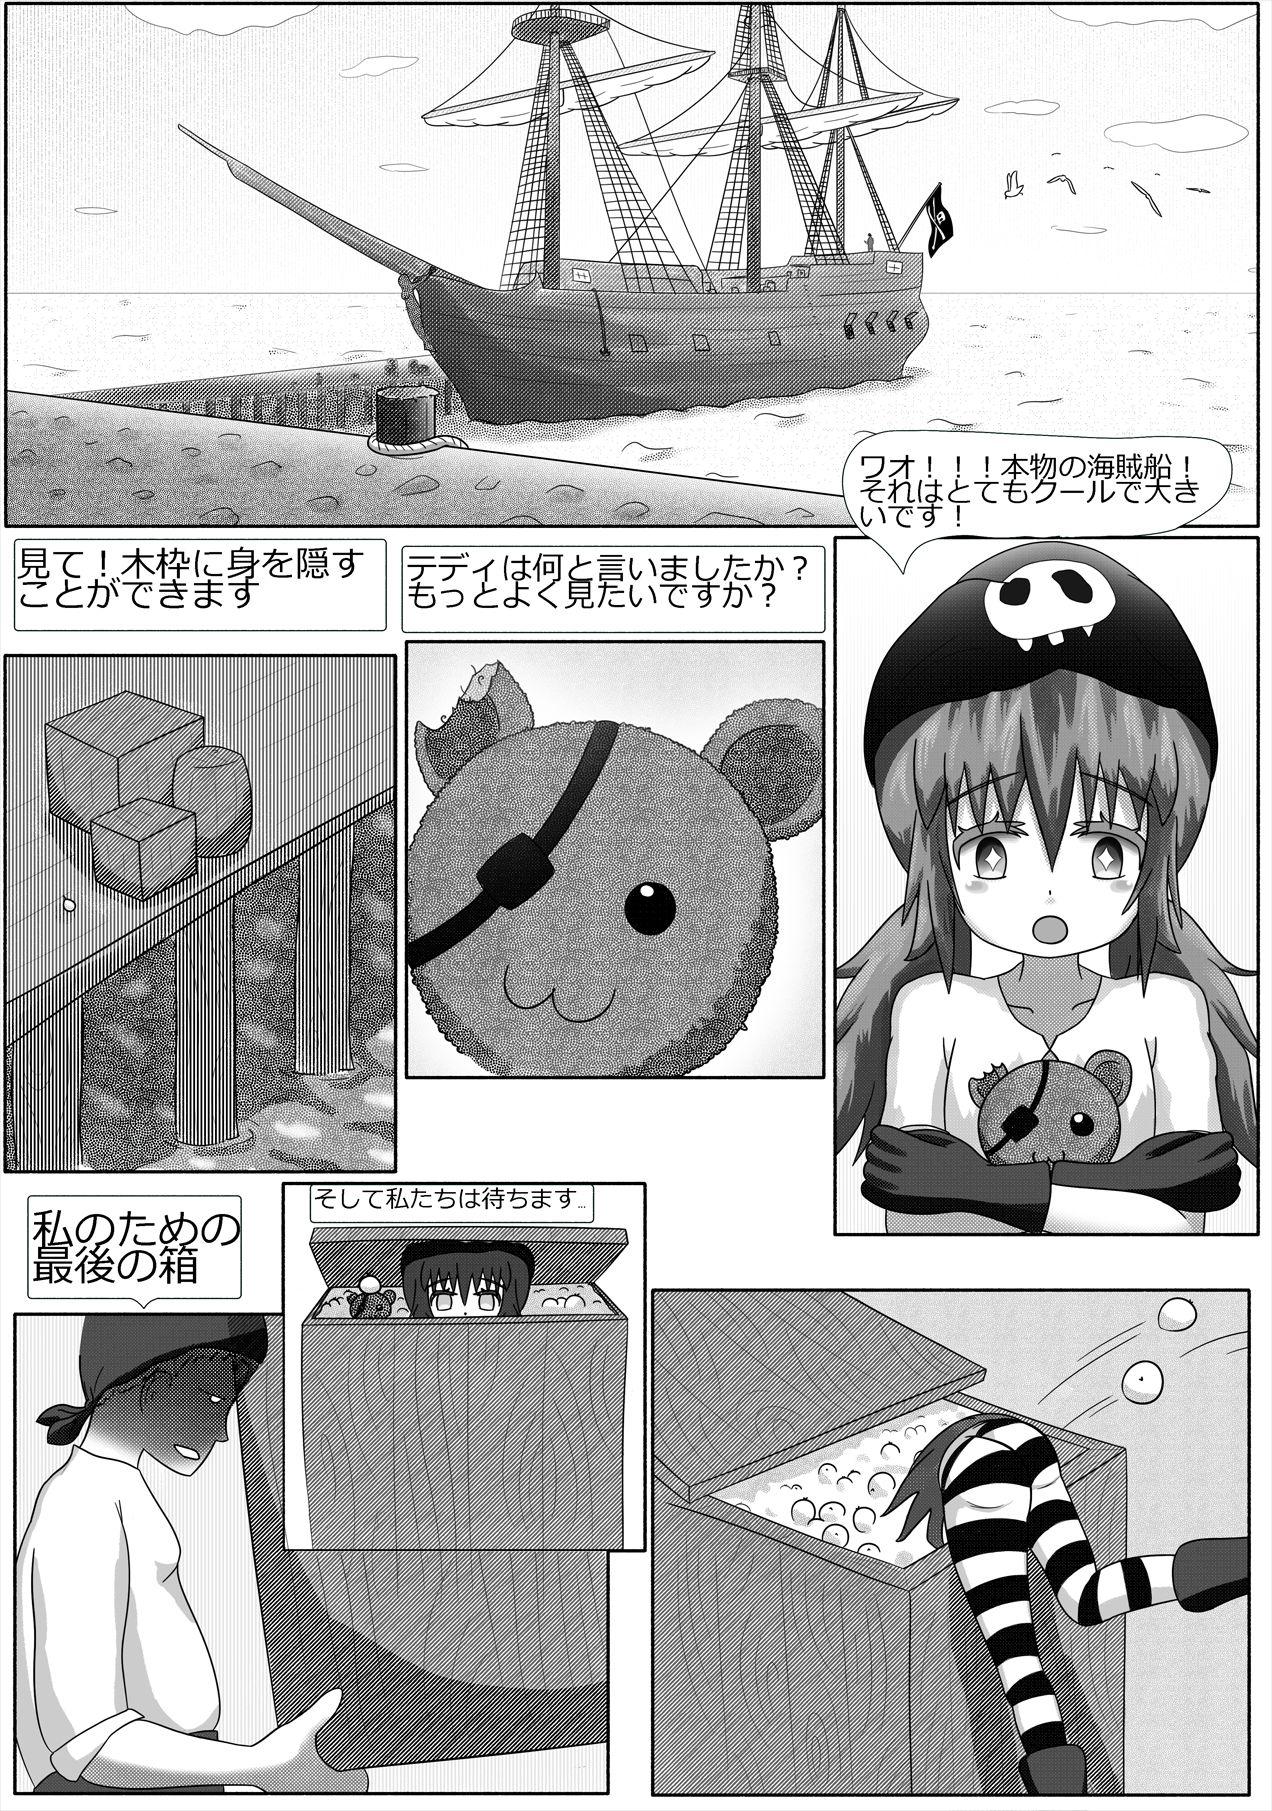 Best Blow Job 「ロリマンサー」 鴨が葱をしょって来る 「日本語」 Mum - Page 2